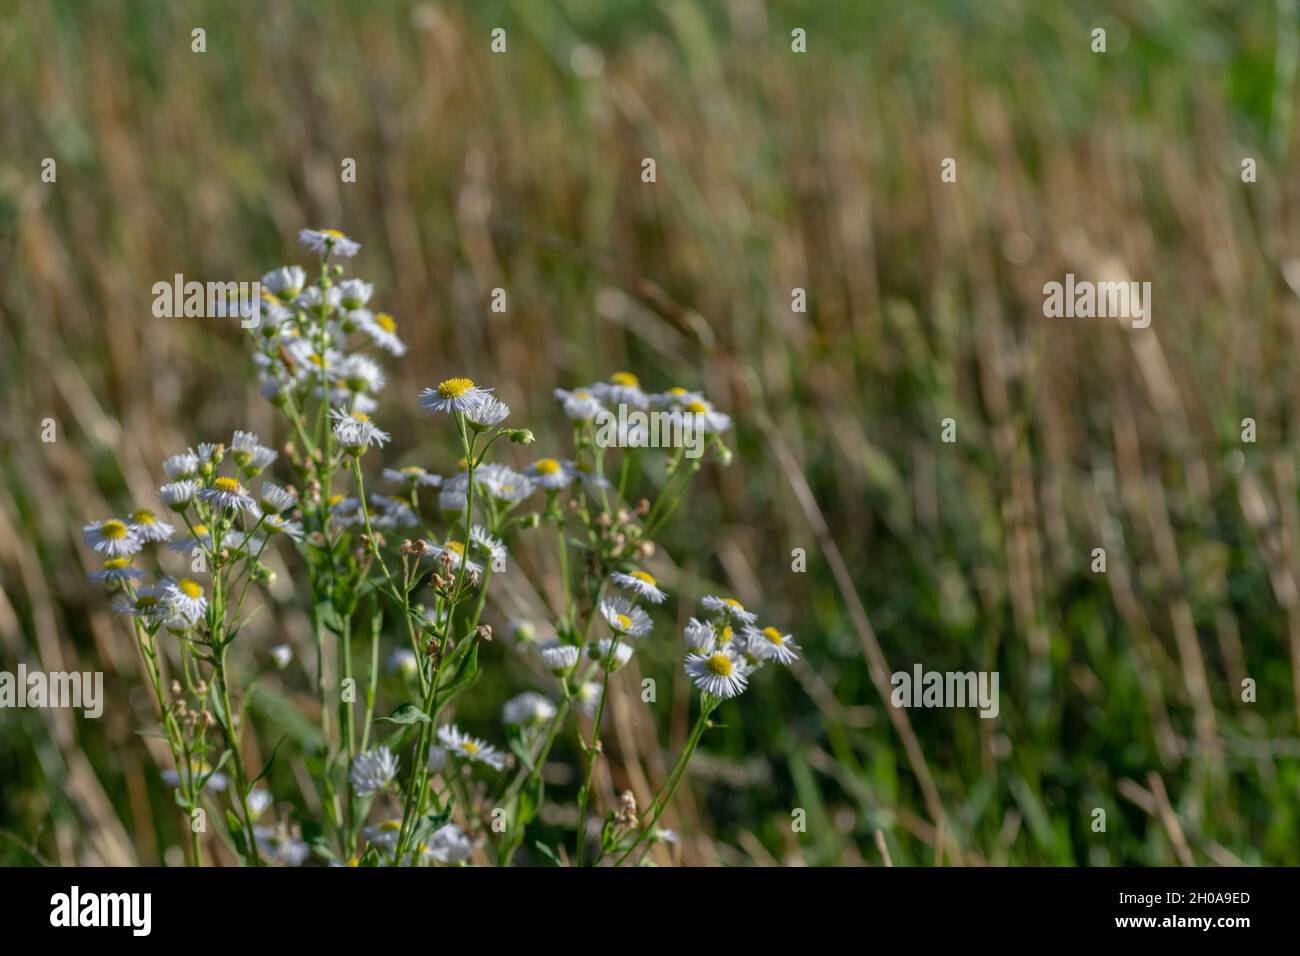 Une plante dans un champ avec de petites fleurs blanches Photo Stock - Alamy